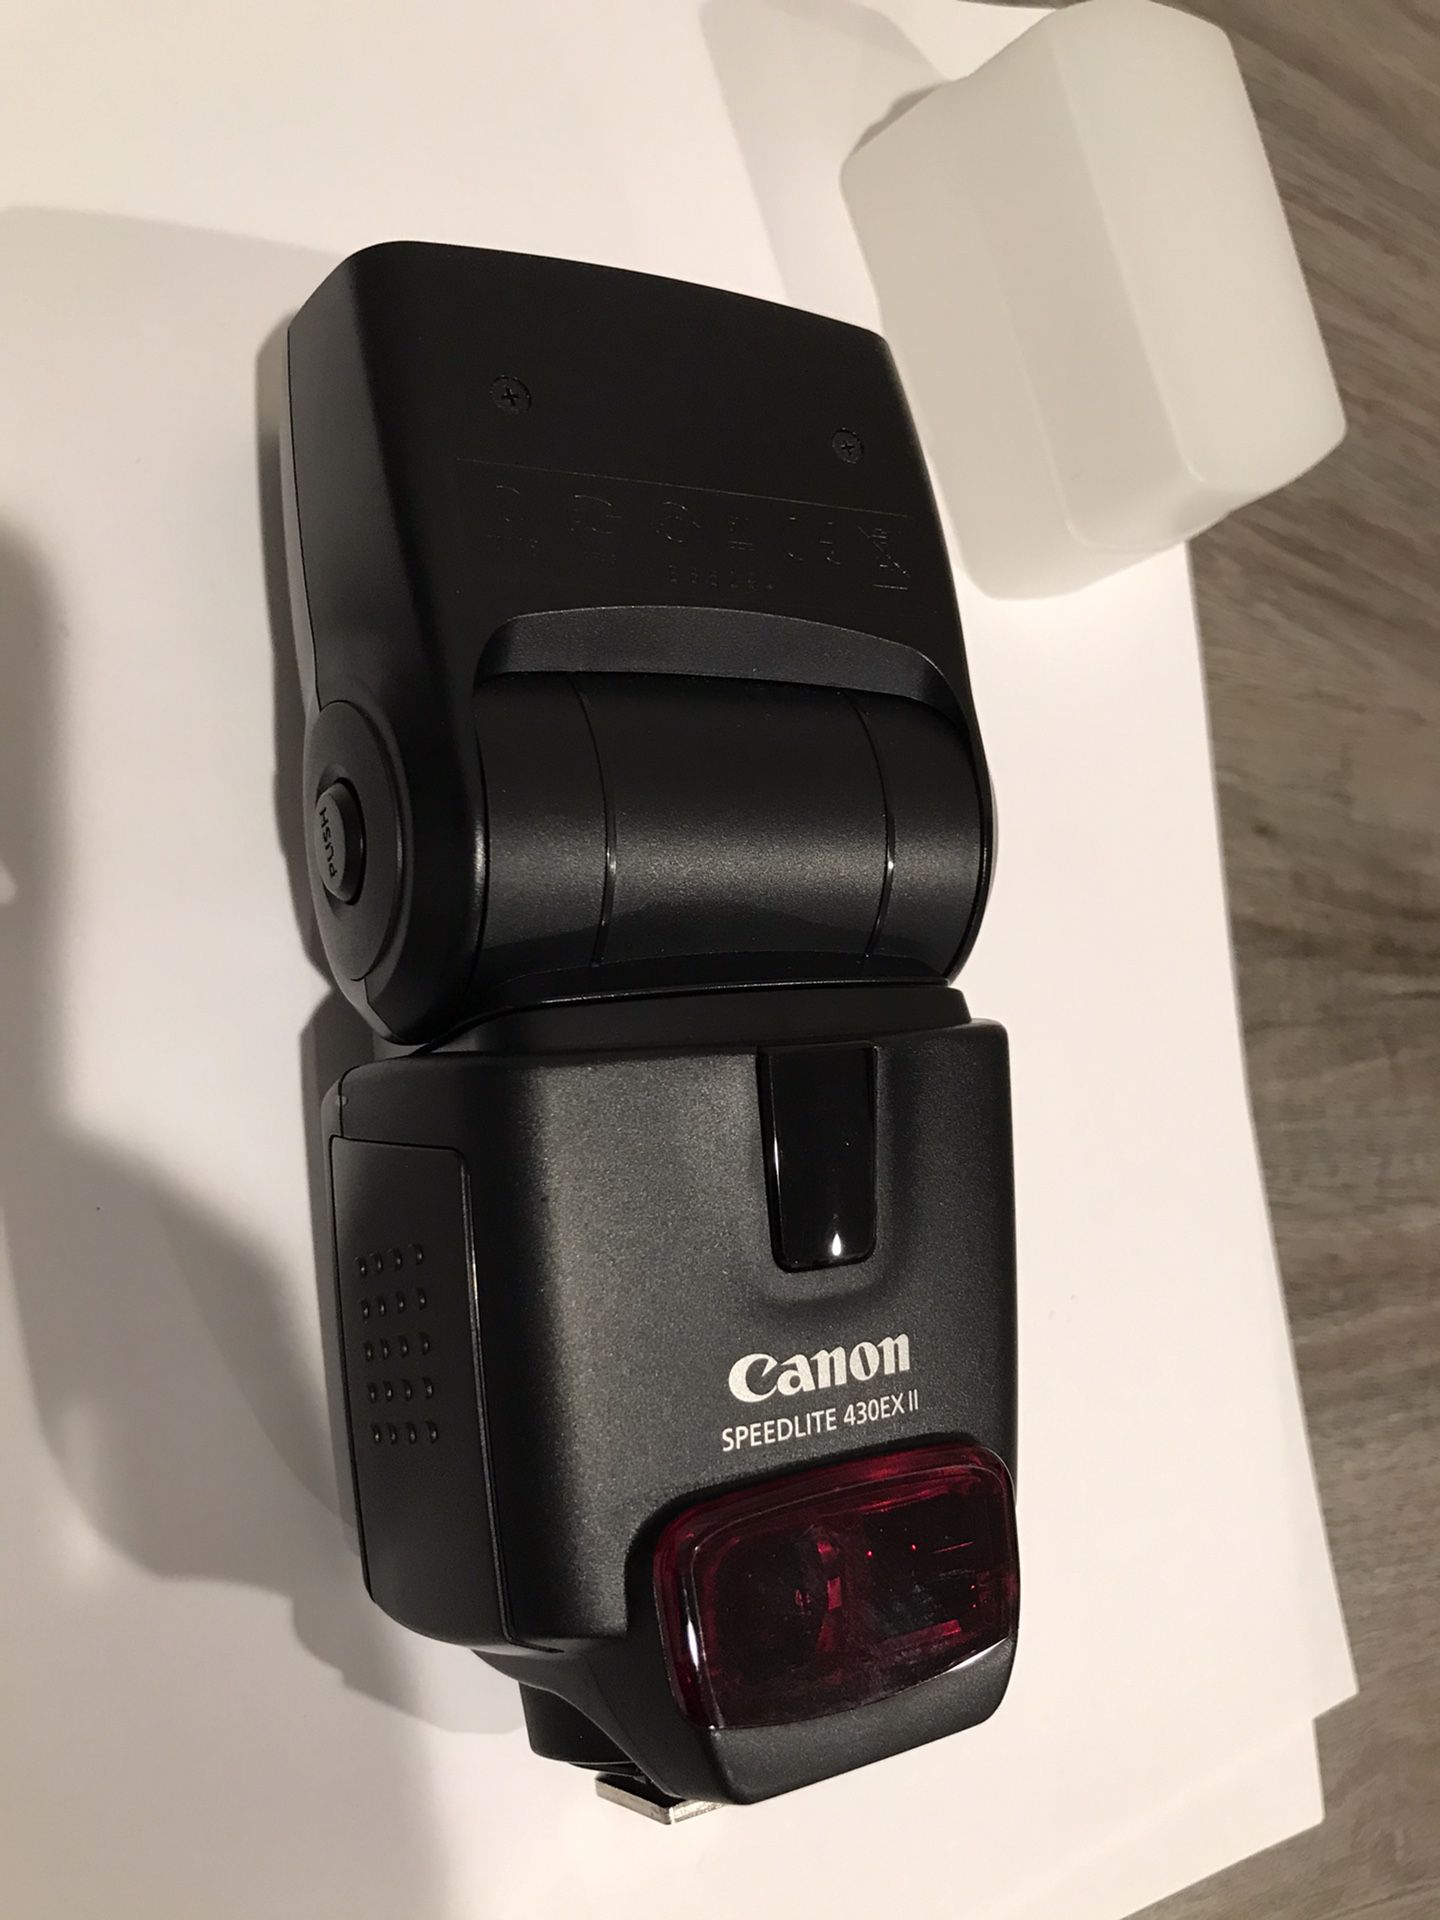 Canon Speedlite 430EX II -SLR Camera Flash